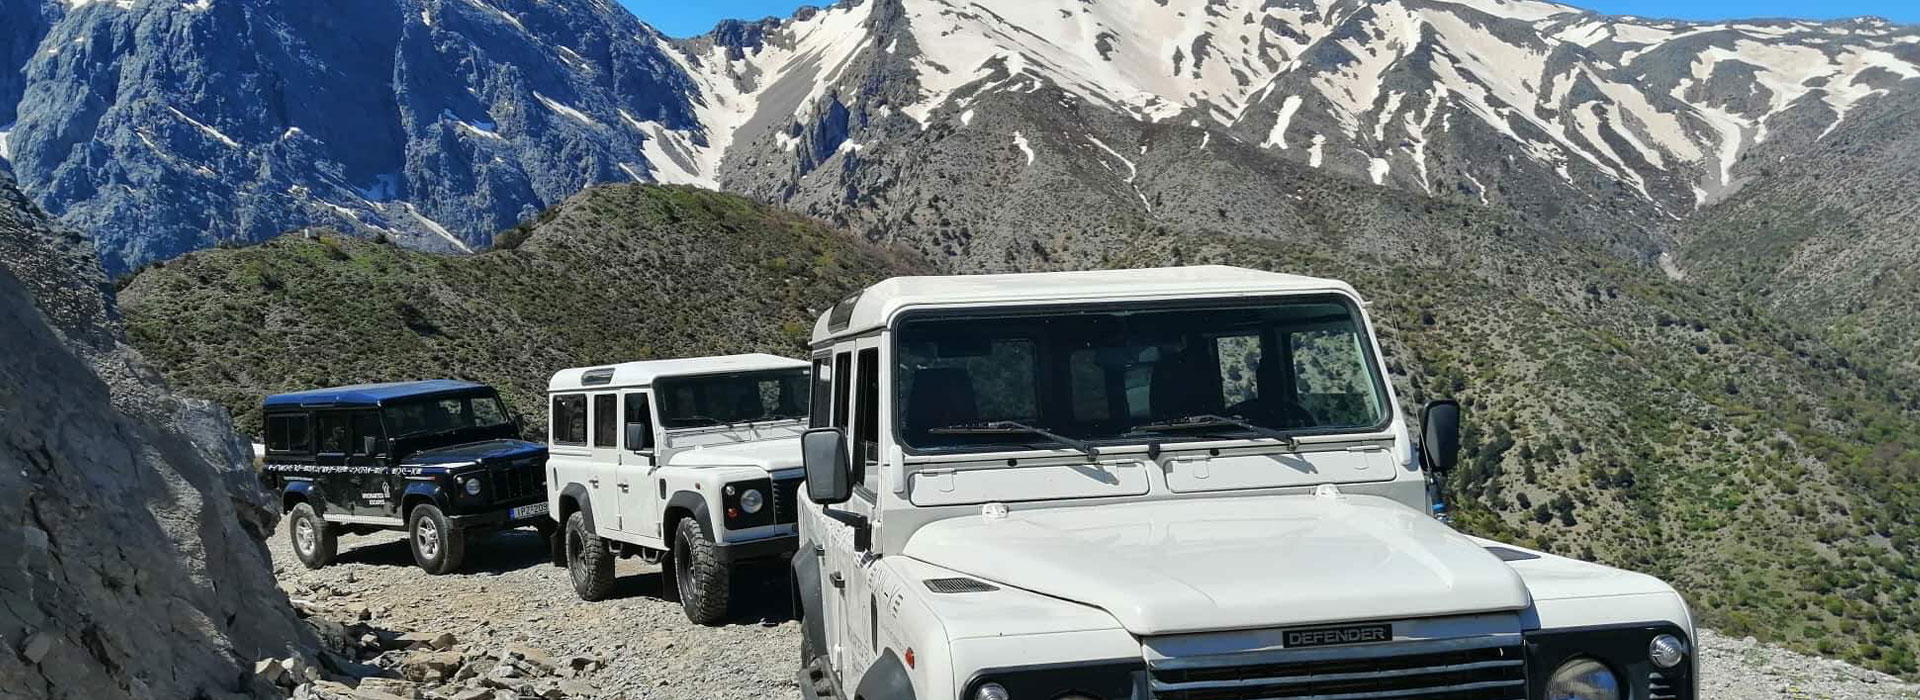 Jeep Safari to the White mountains